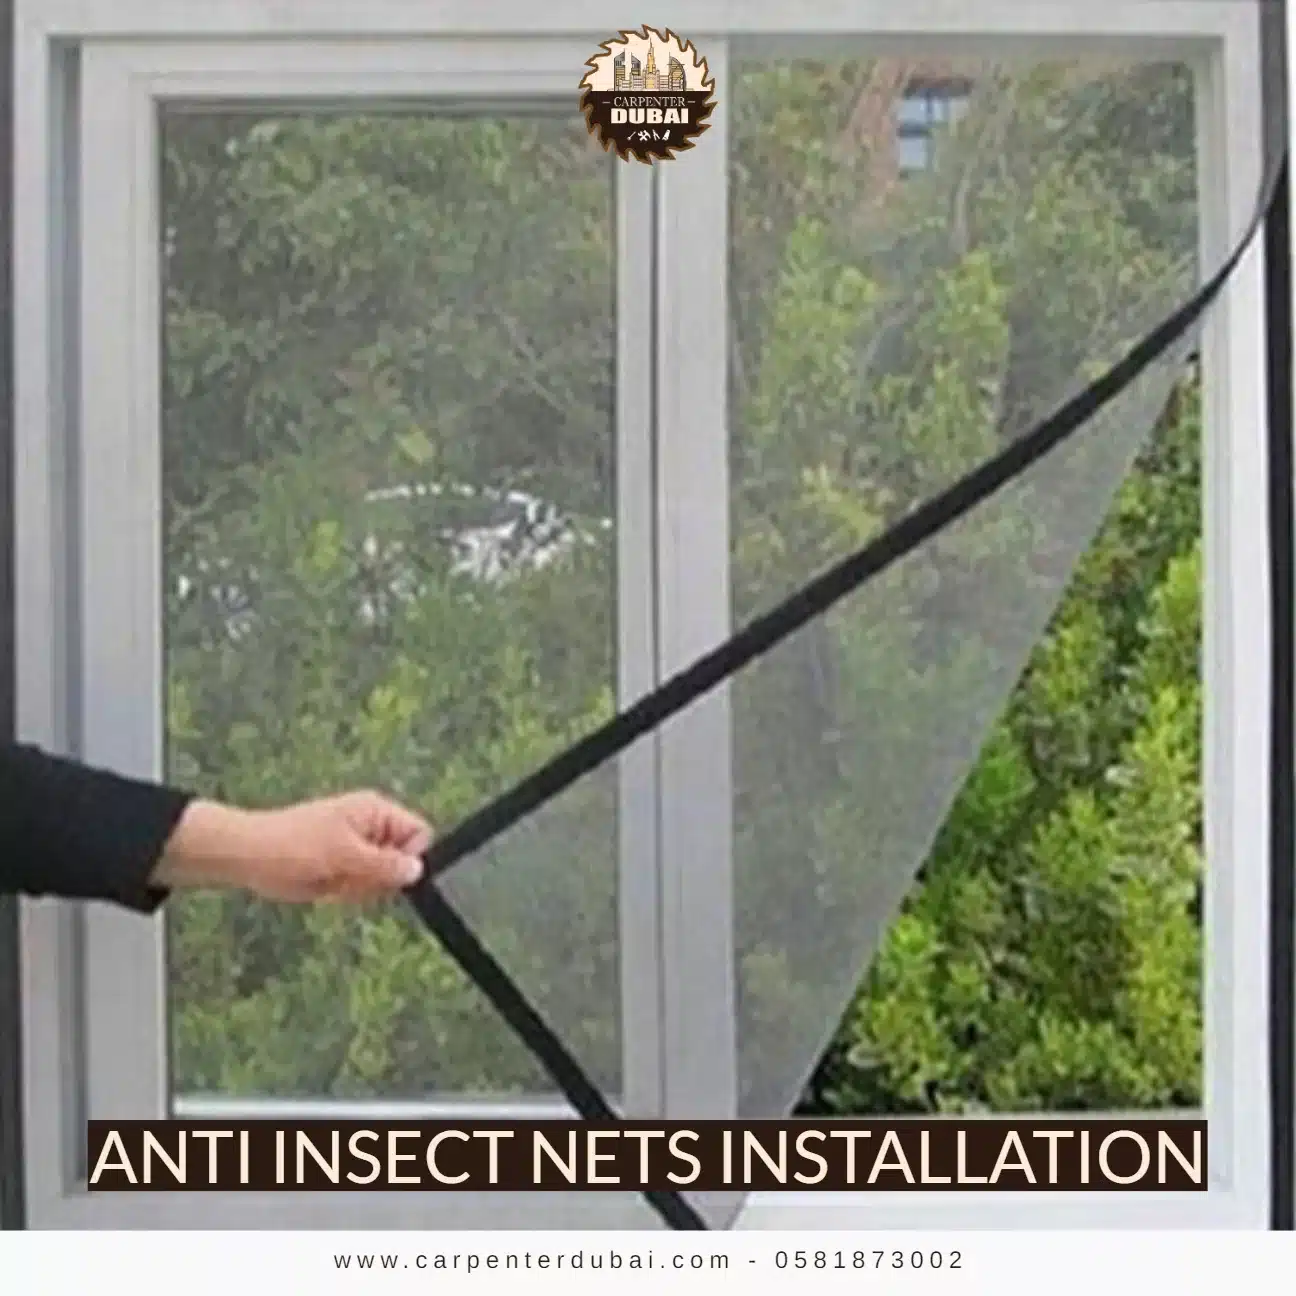 Anti Insect Nets Installation - 0581873002 - Carpenter Dubai